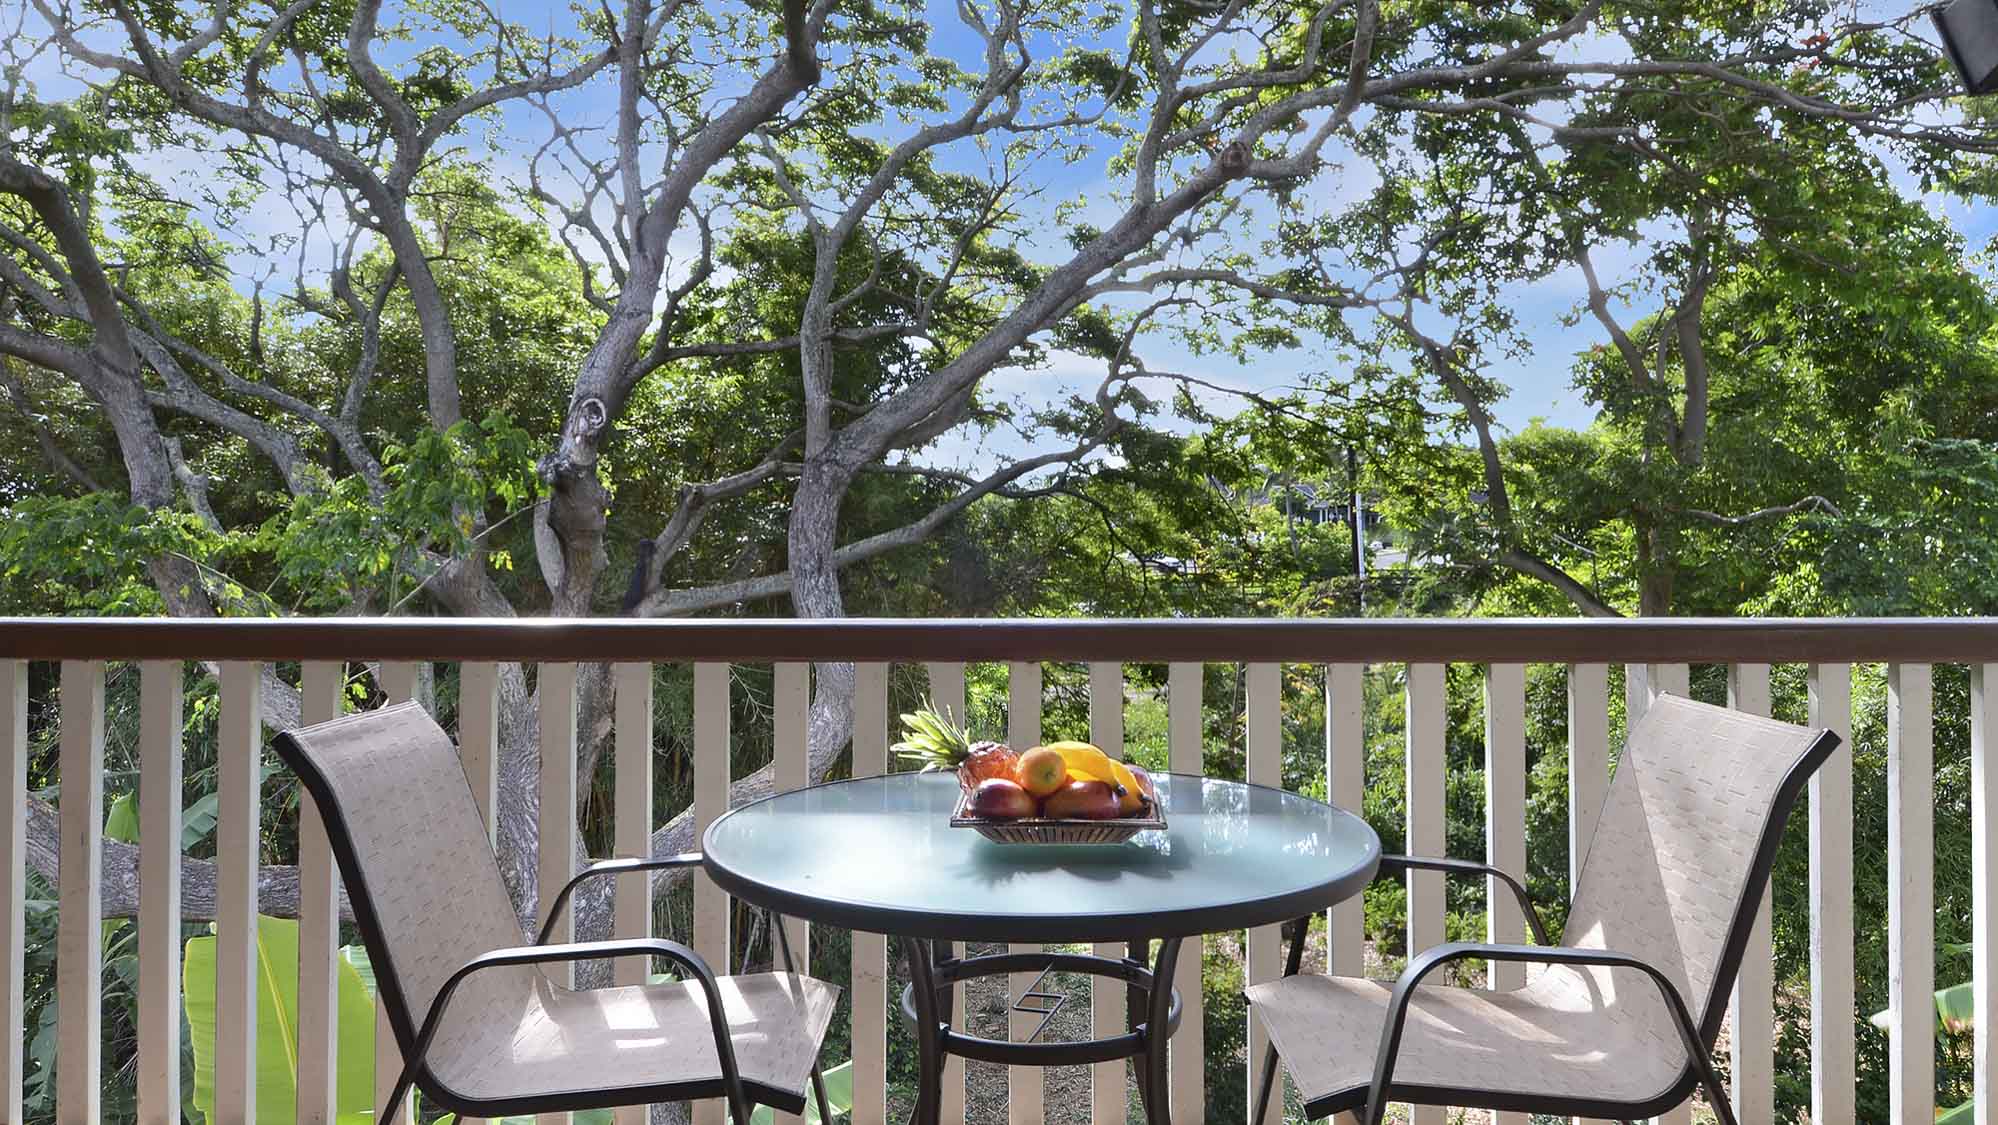 Waikomo Stream Villas #432 - Dining Lanai View - Parrish Kauai